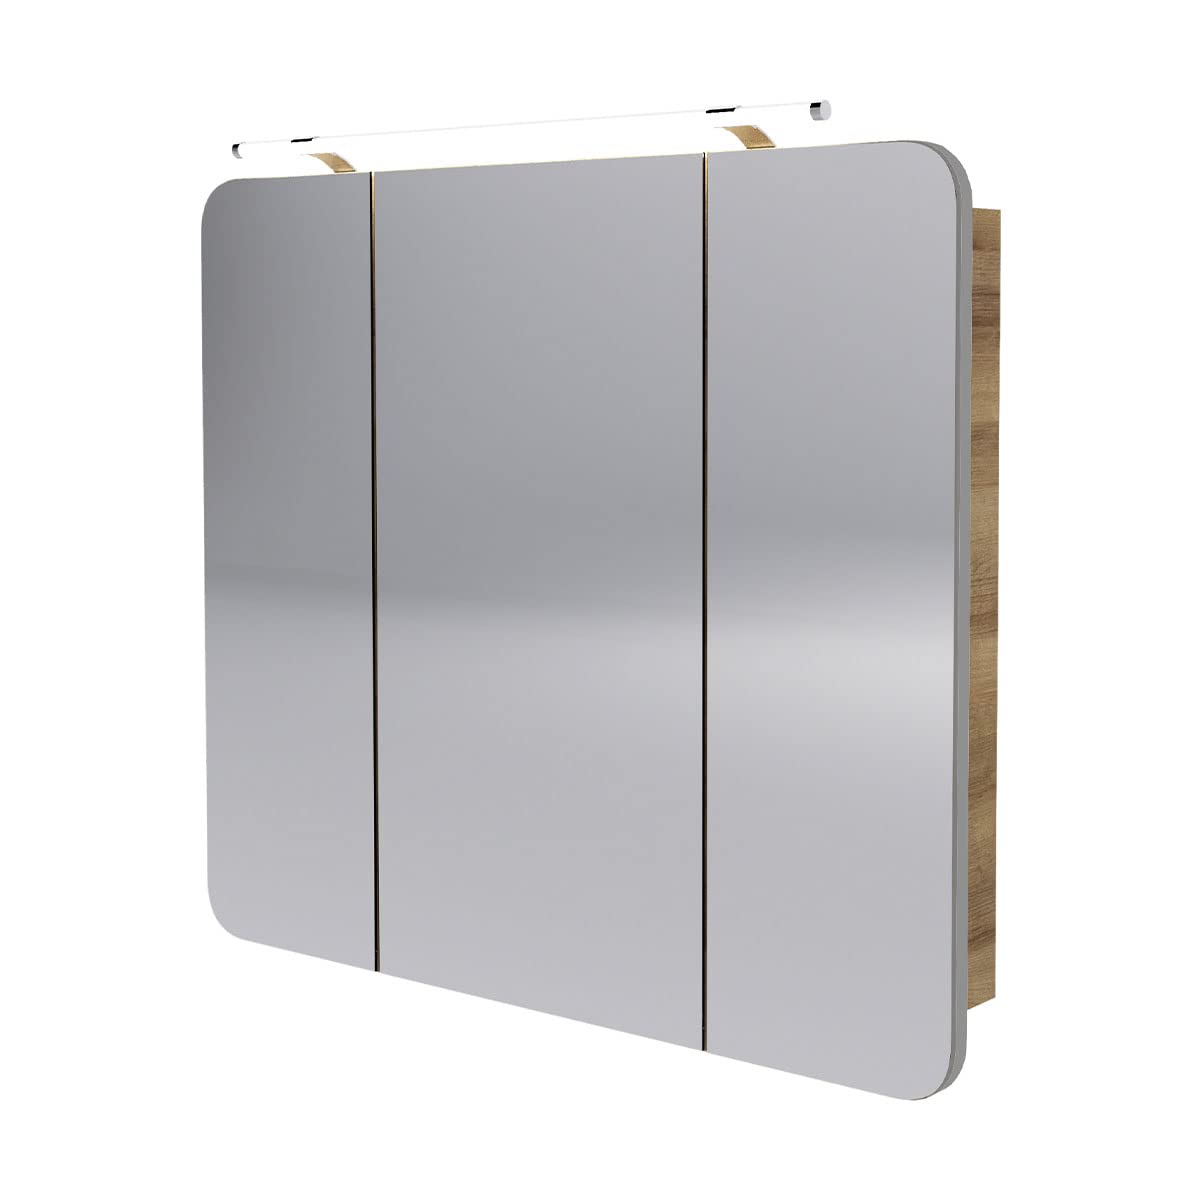 FACKELMANN Milano Spiegelschrank mit LED-Beleuchtung – Alibertschrank 3-türig fürs Badezimmer (90 cm x 78 cm x 15,5 cm) – Badschrank mit Spiegelfläche in Holz braun